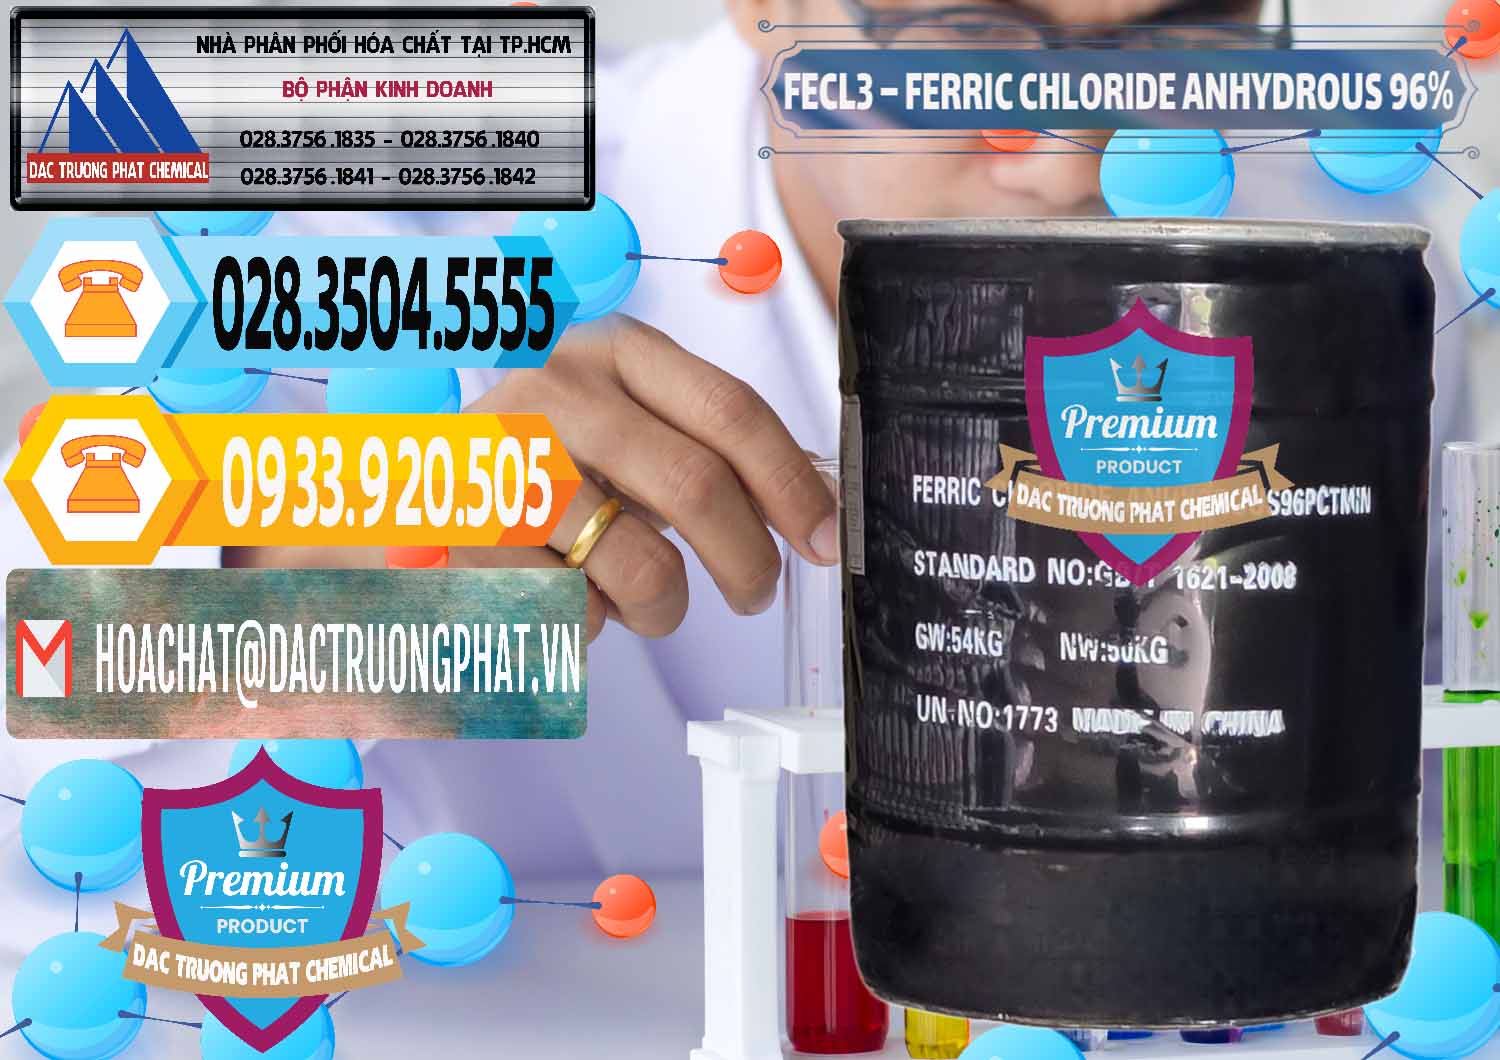 Đơn vị bán - cung cấp FECL3 – Ferric Chloride Anhydrous 96% Trung Quốc China - 0065 - Cty chuyên cung cấp - kinh doanh hóa chất tại TP.HCM - hoachattayrua.net